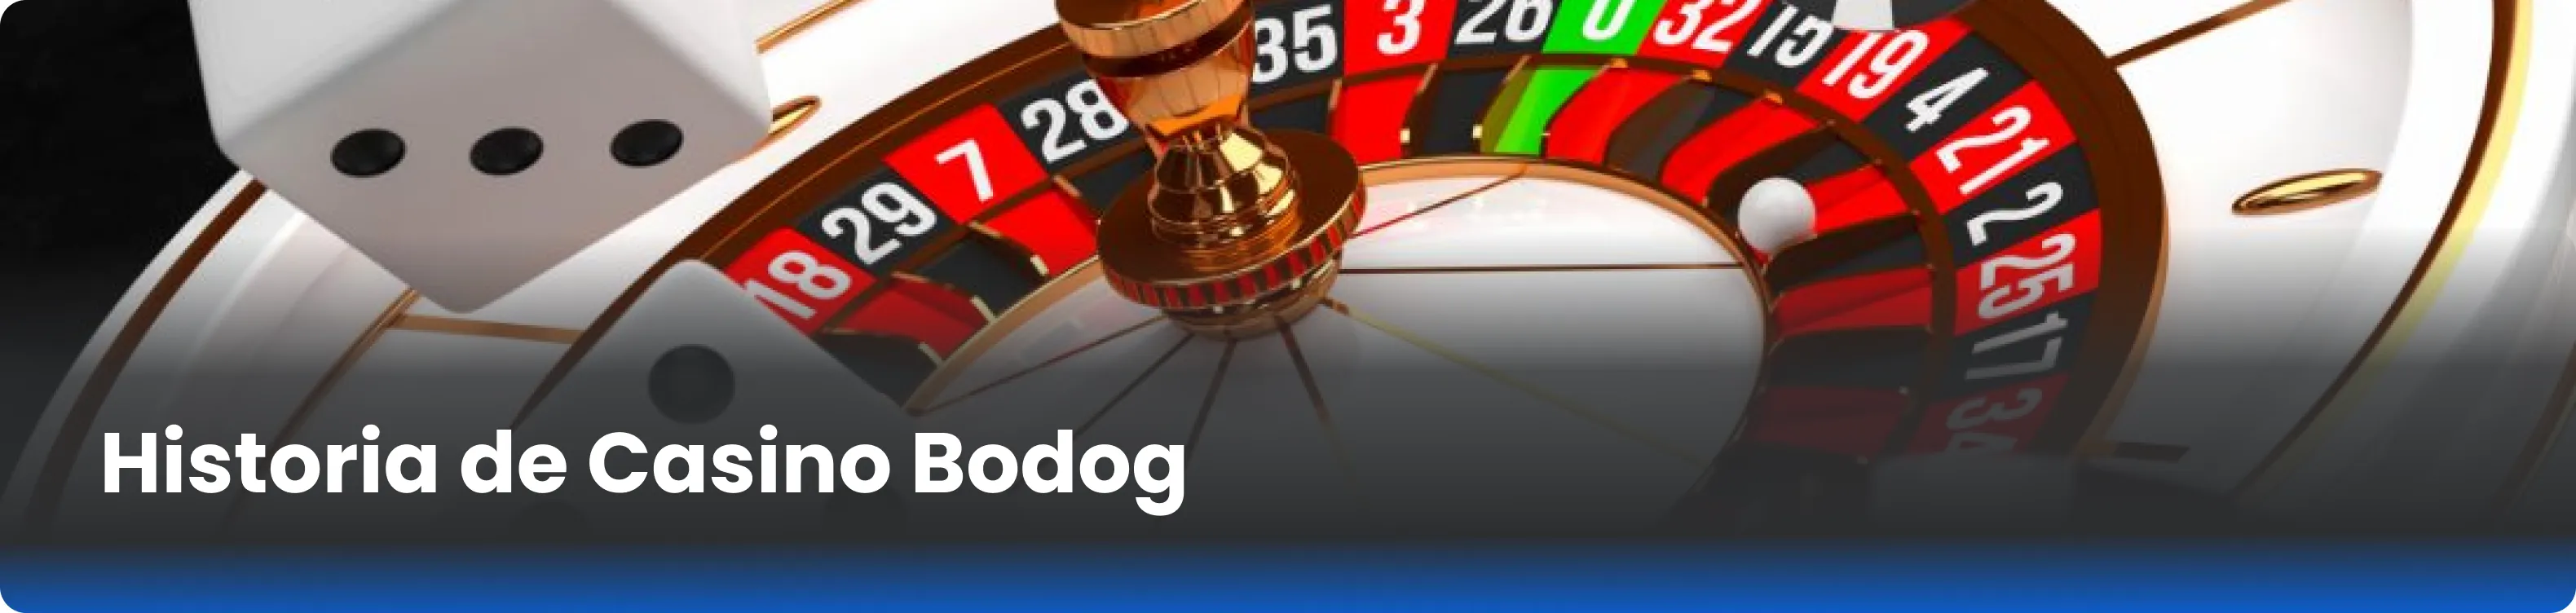 Historia de Casino Bodog 